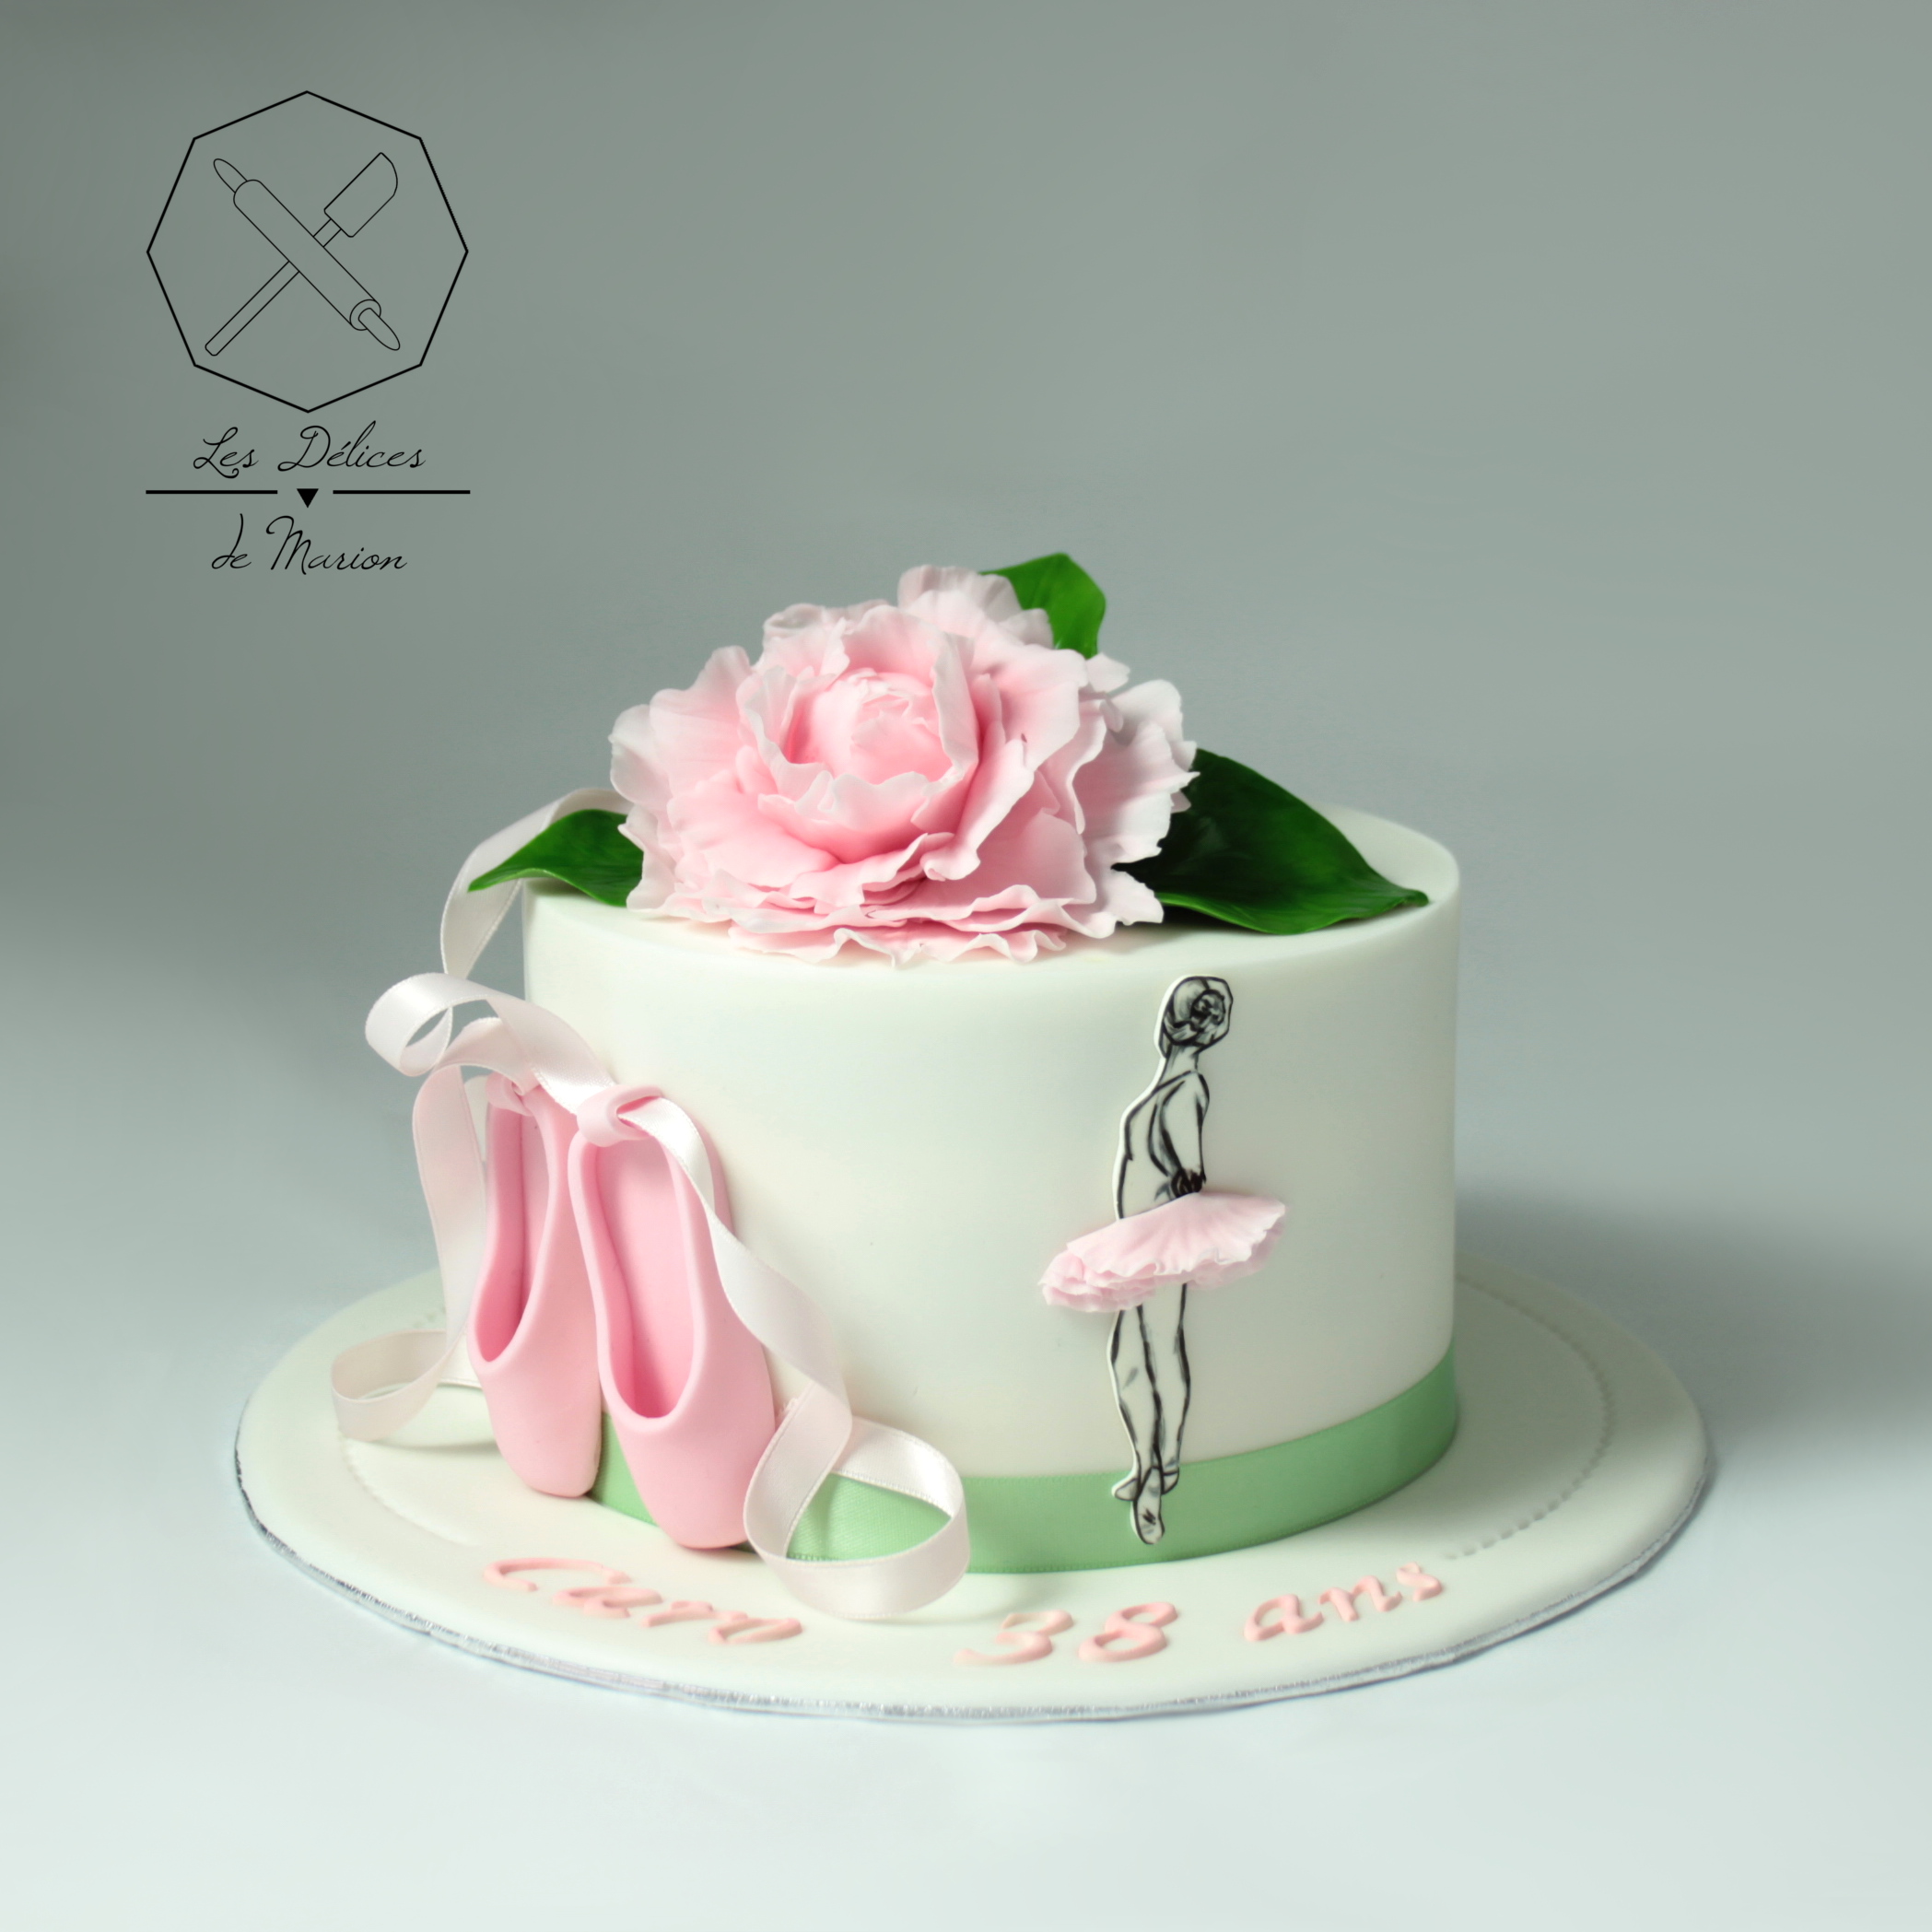 gateau_danse_classique_ballet_ballerine_pivoine_fleur_cake-design_delices-marion